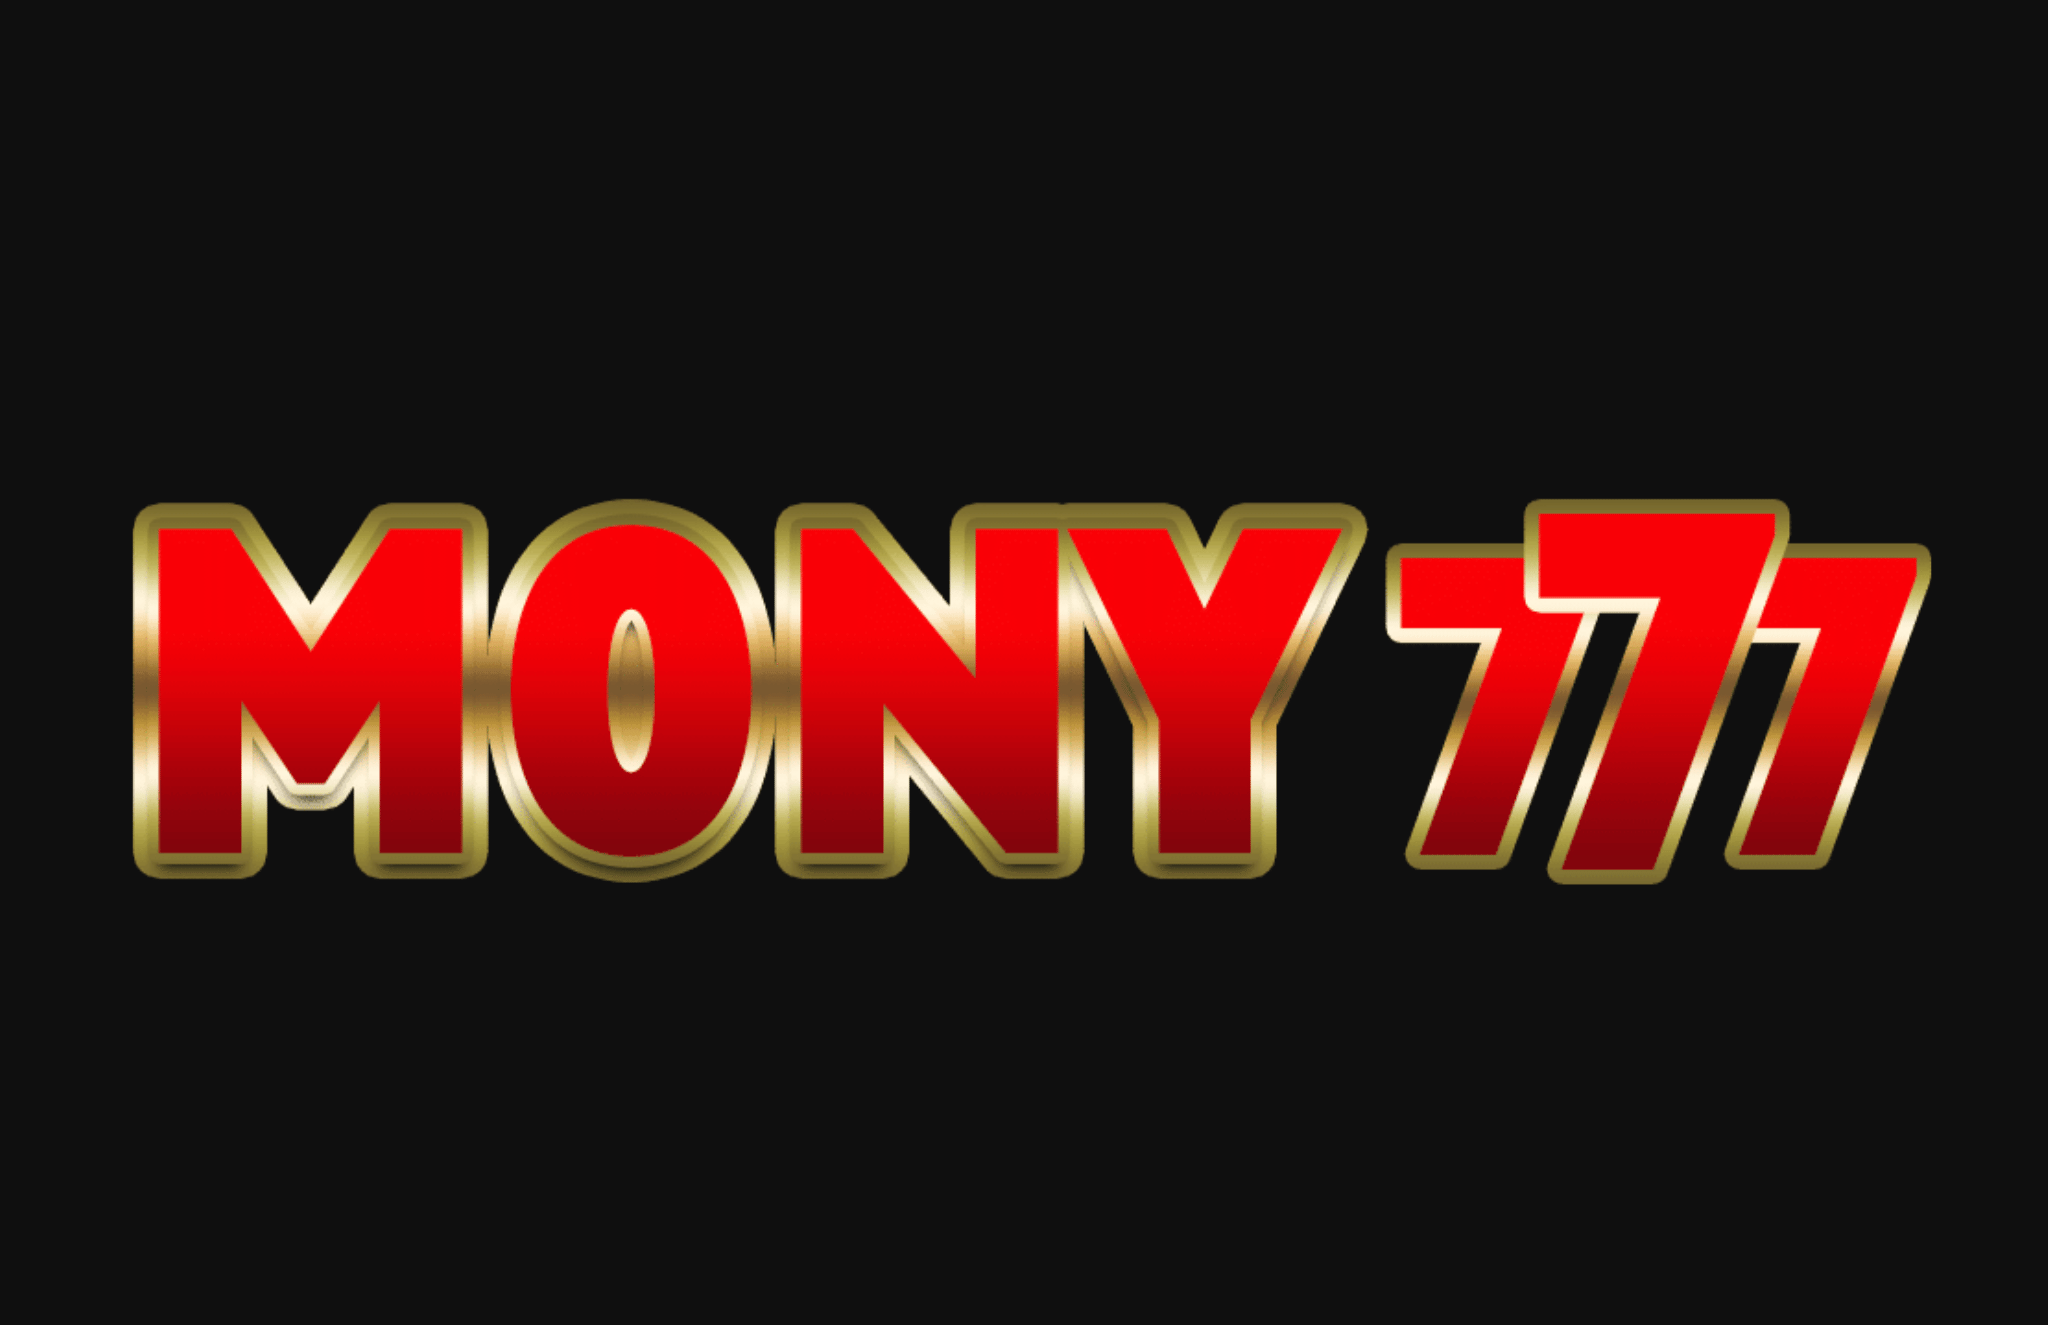 Mony777